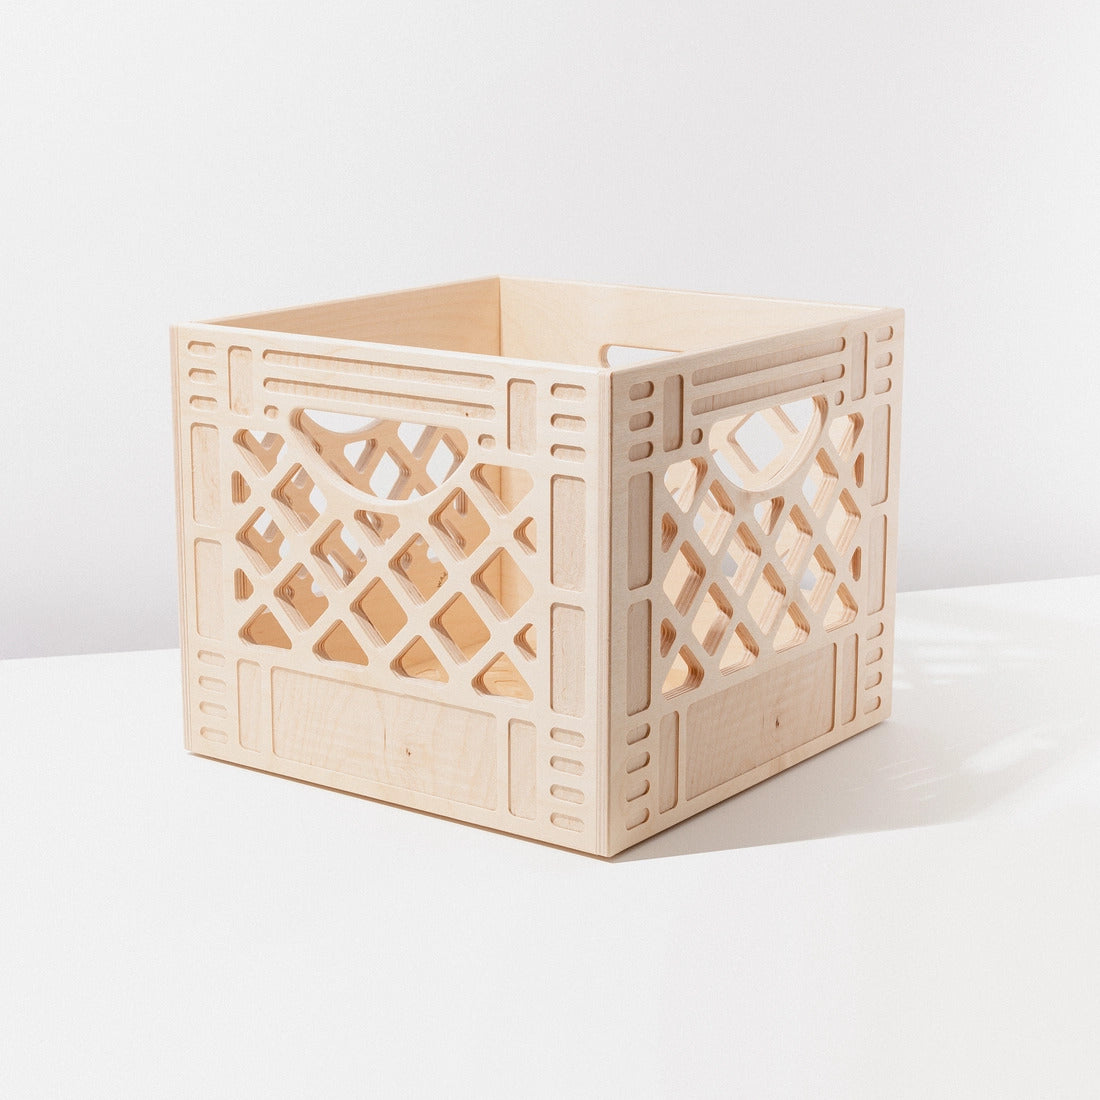 Waam - Wooden Milk Crate